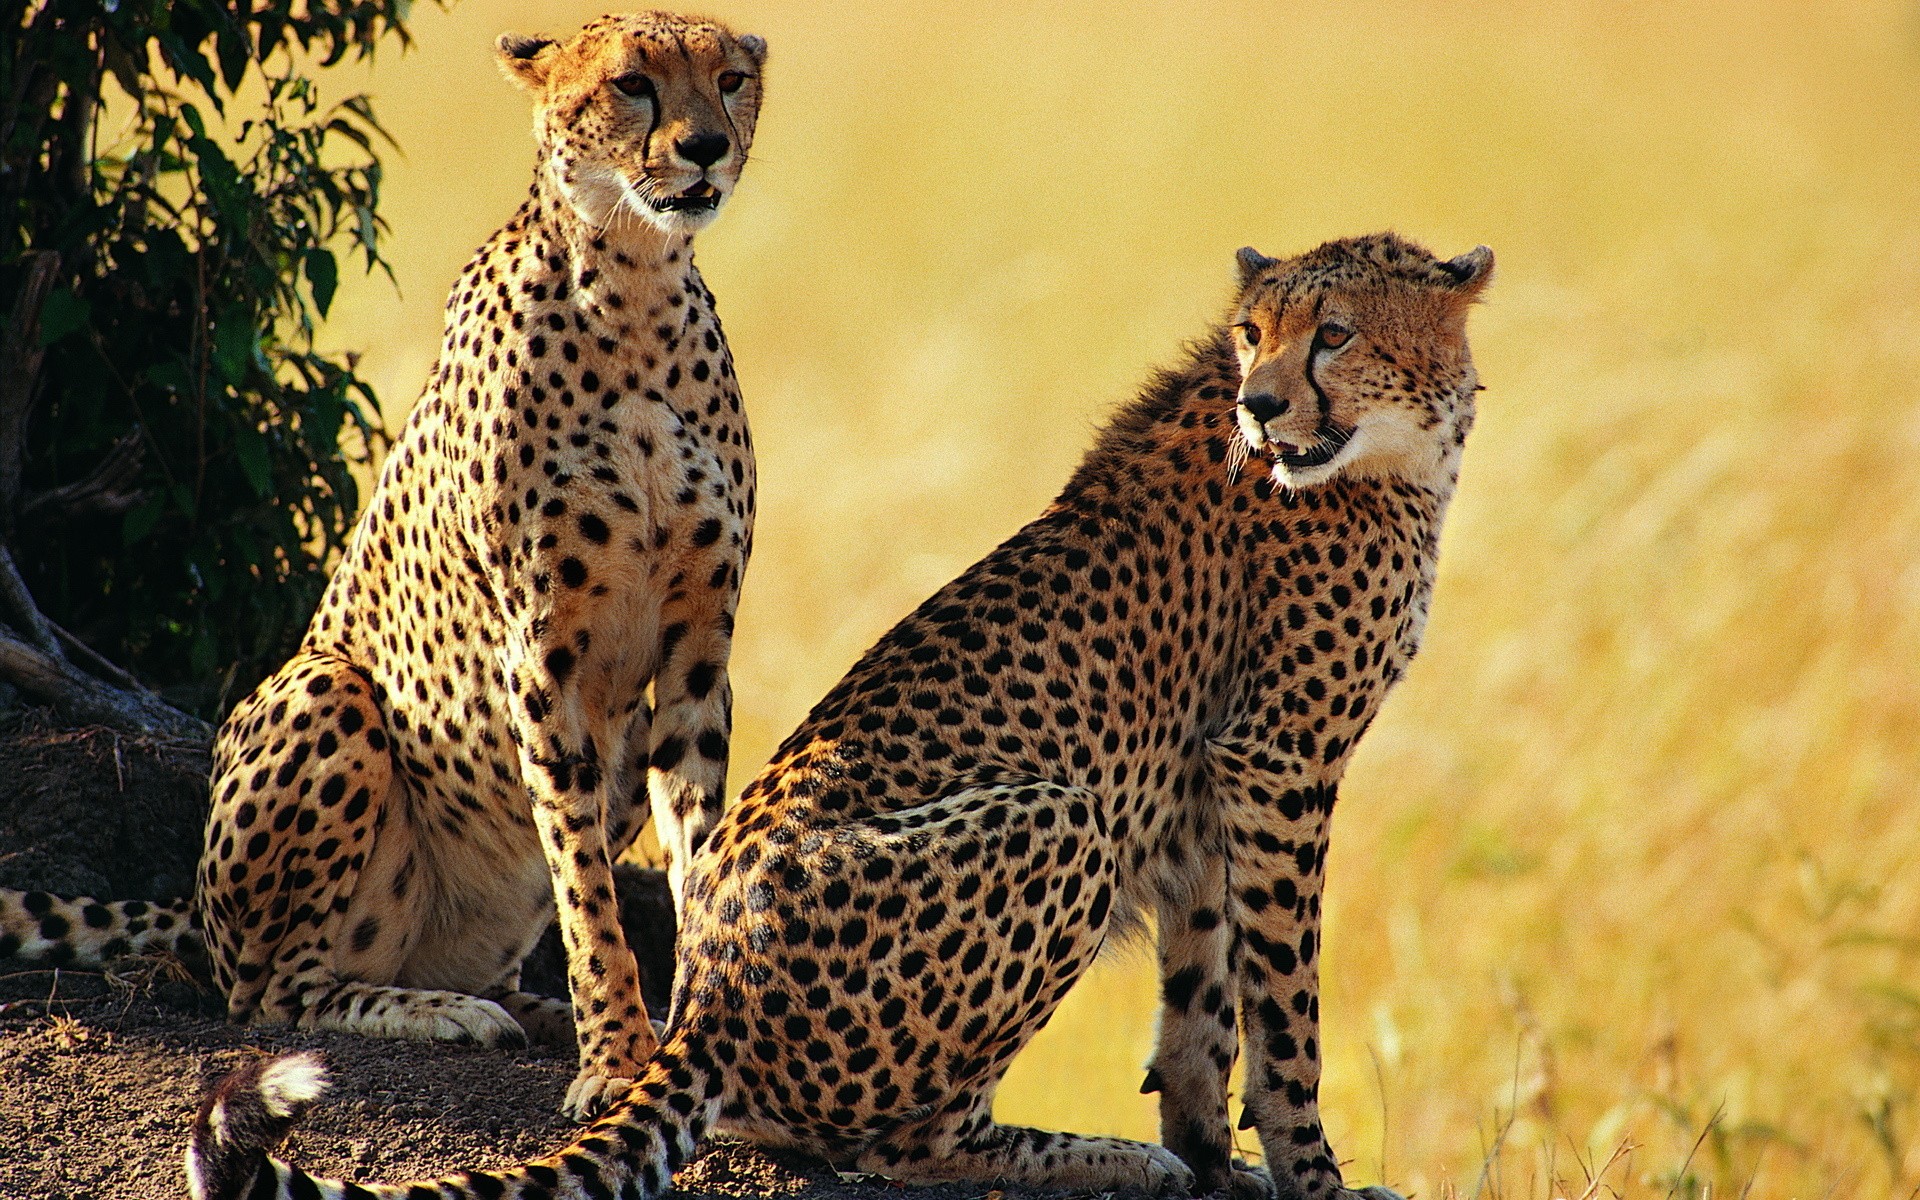 animals, cheetahs - desktop wallpaper